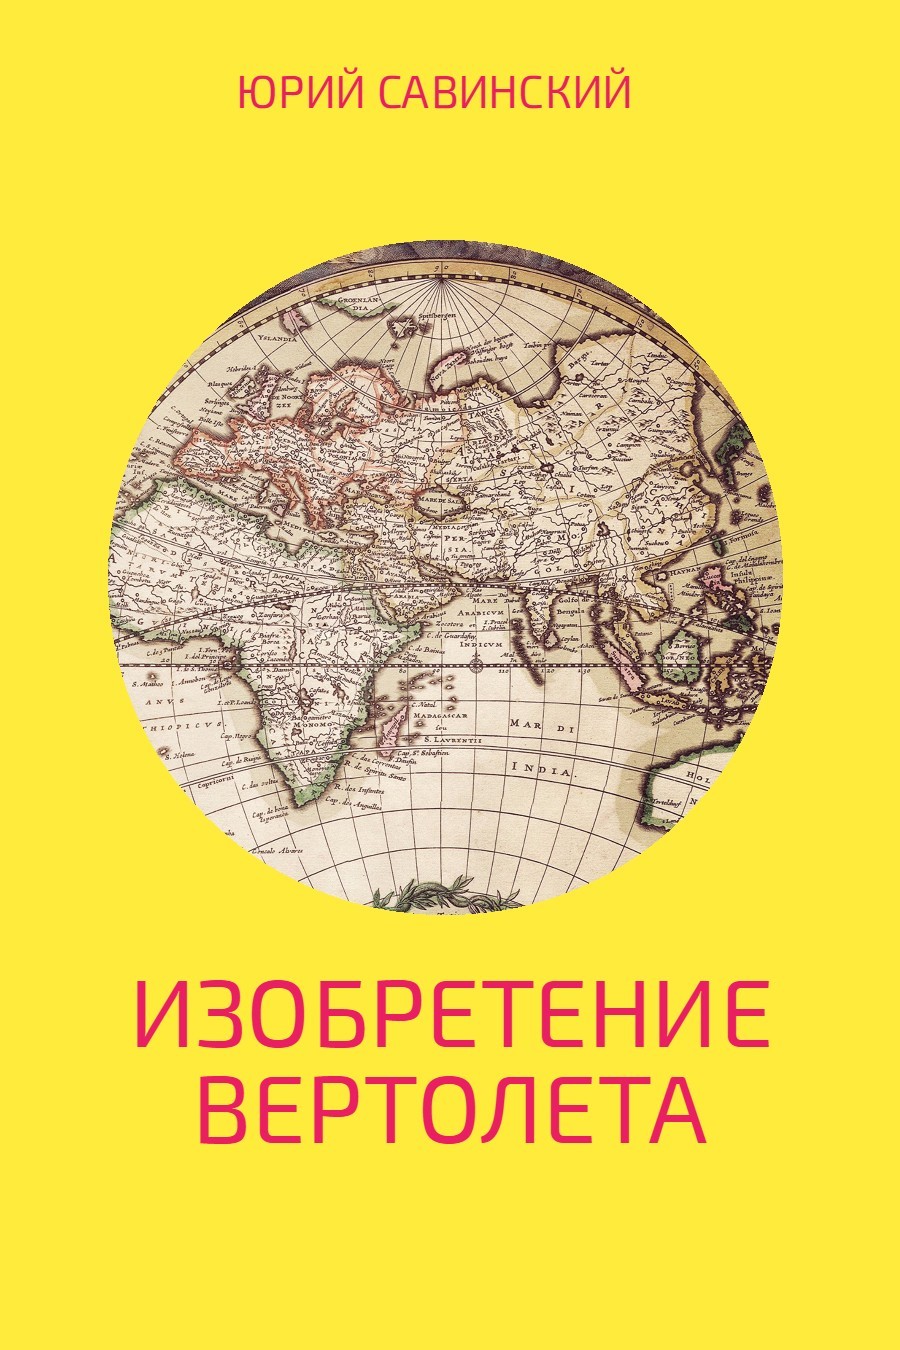 Книга Изобретение вертолета из серии , созданная Юрий Савинский, может относится к жанру Прочая образовательная литература, Самиздат. Стоимость книги Изобретение вертолета  с идентификатором 25023364 составляет 39.90 руб.